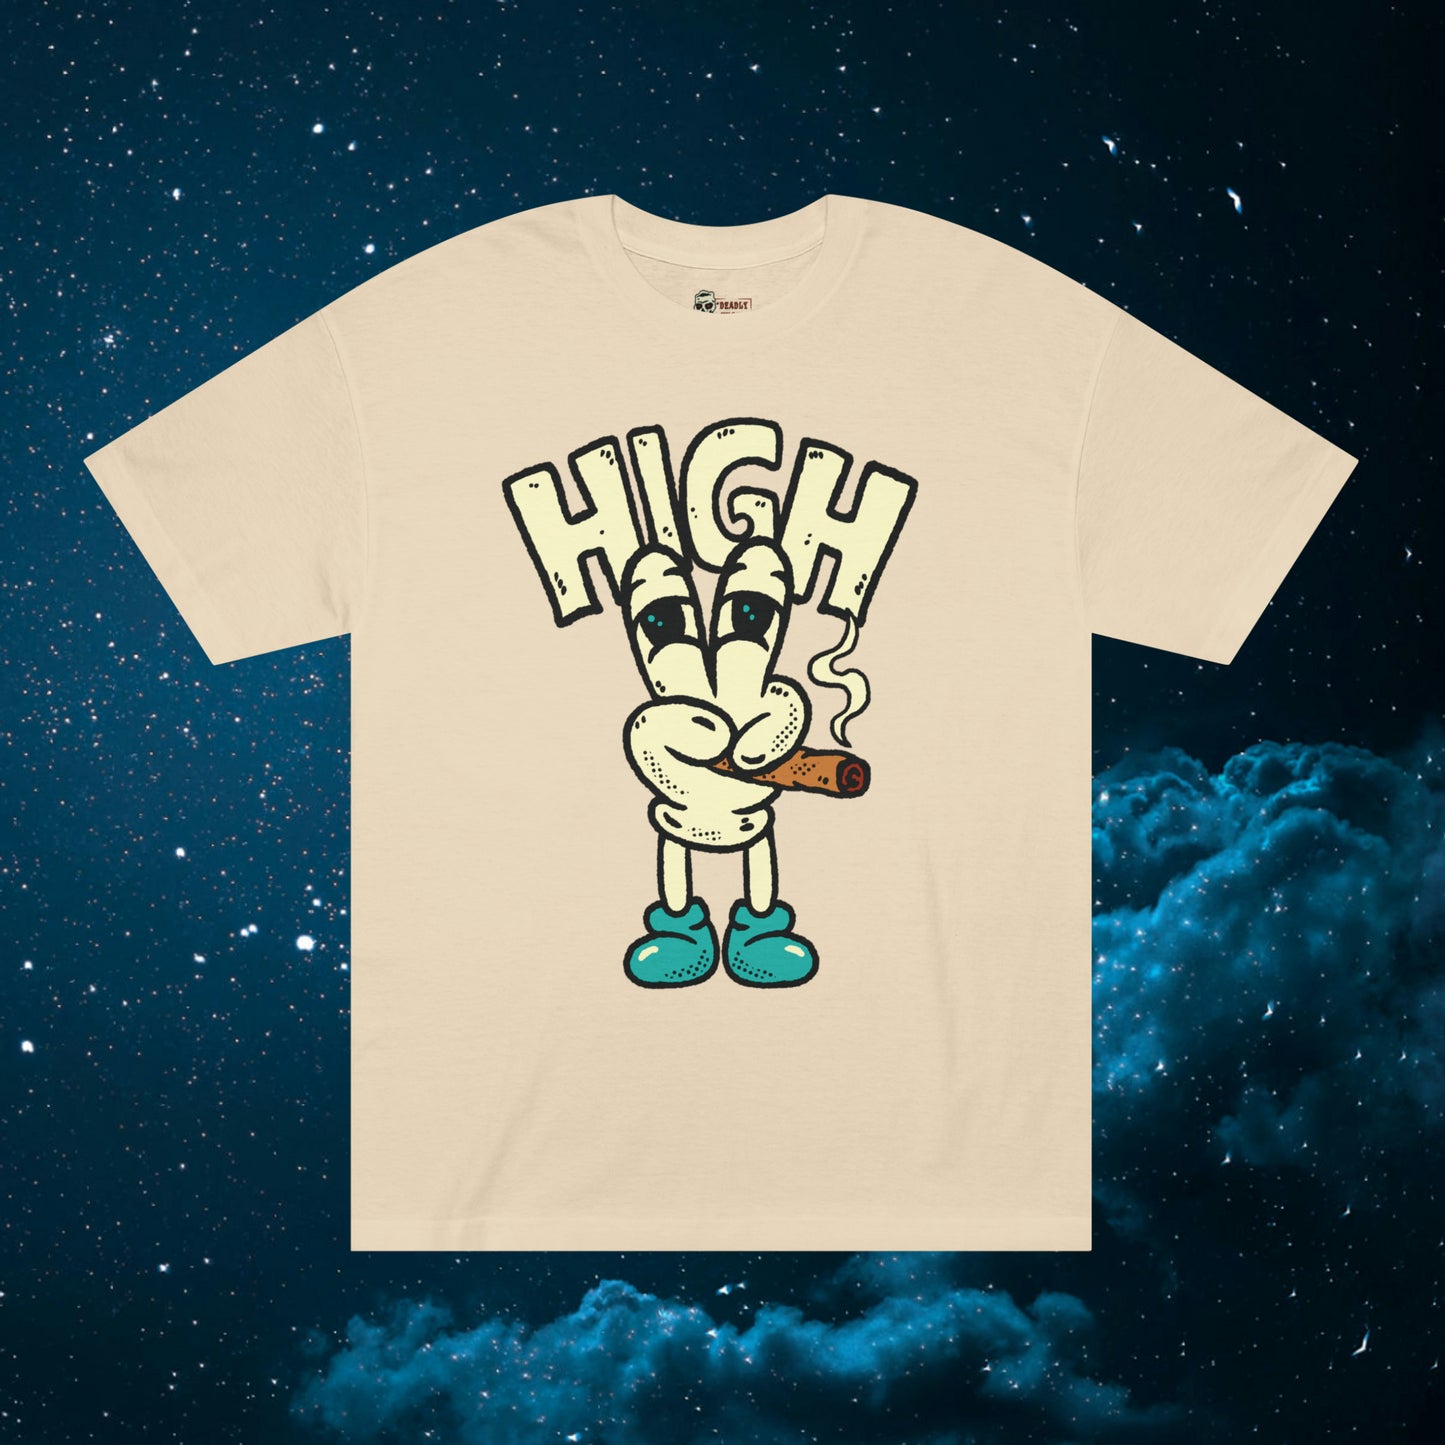 HIGH T-Shirt